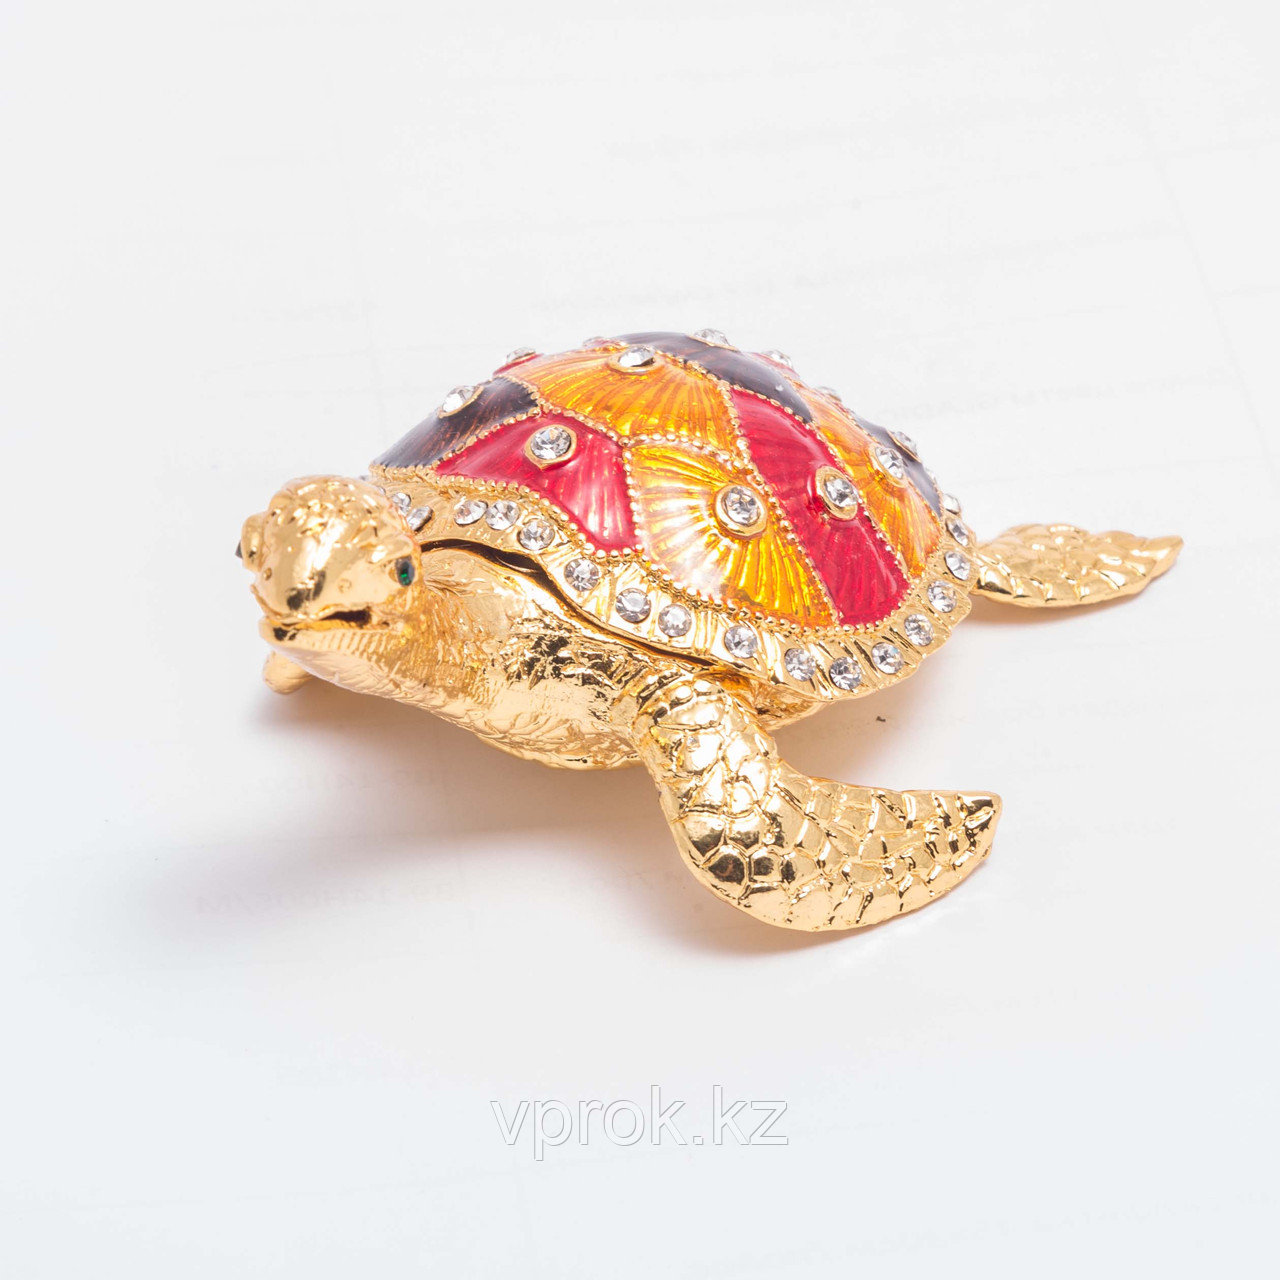 Сувенир-шкатулка "Черепашка с цветным панцирем" 8*2,5 см, фото 1